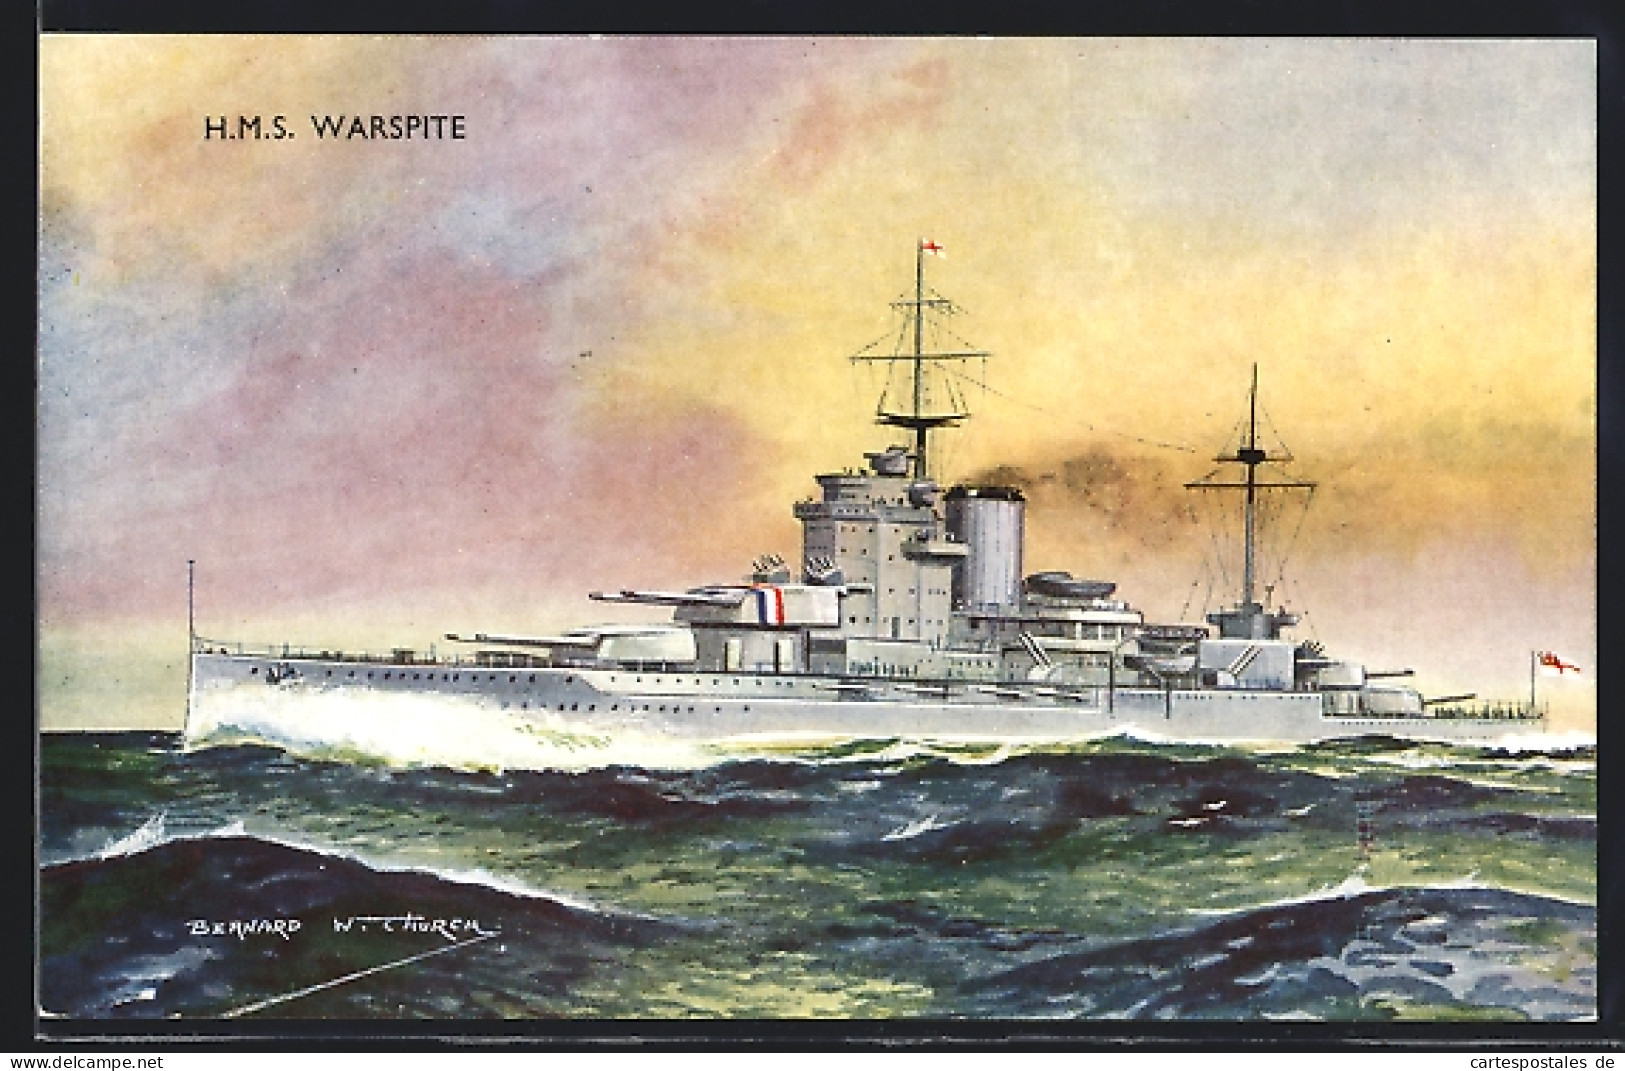 Artist's Pc Bernard W. Church: Britisches Schlachtschiff SMS Warspite  - Krieg